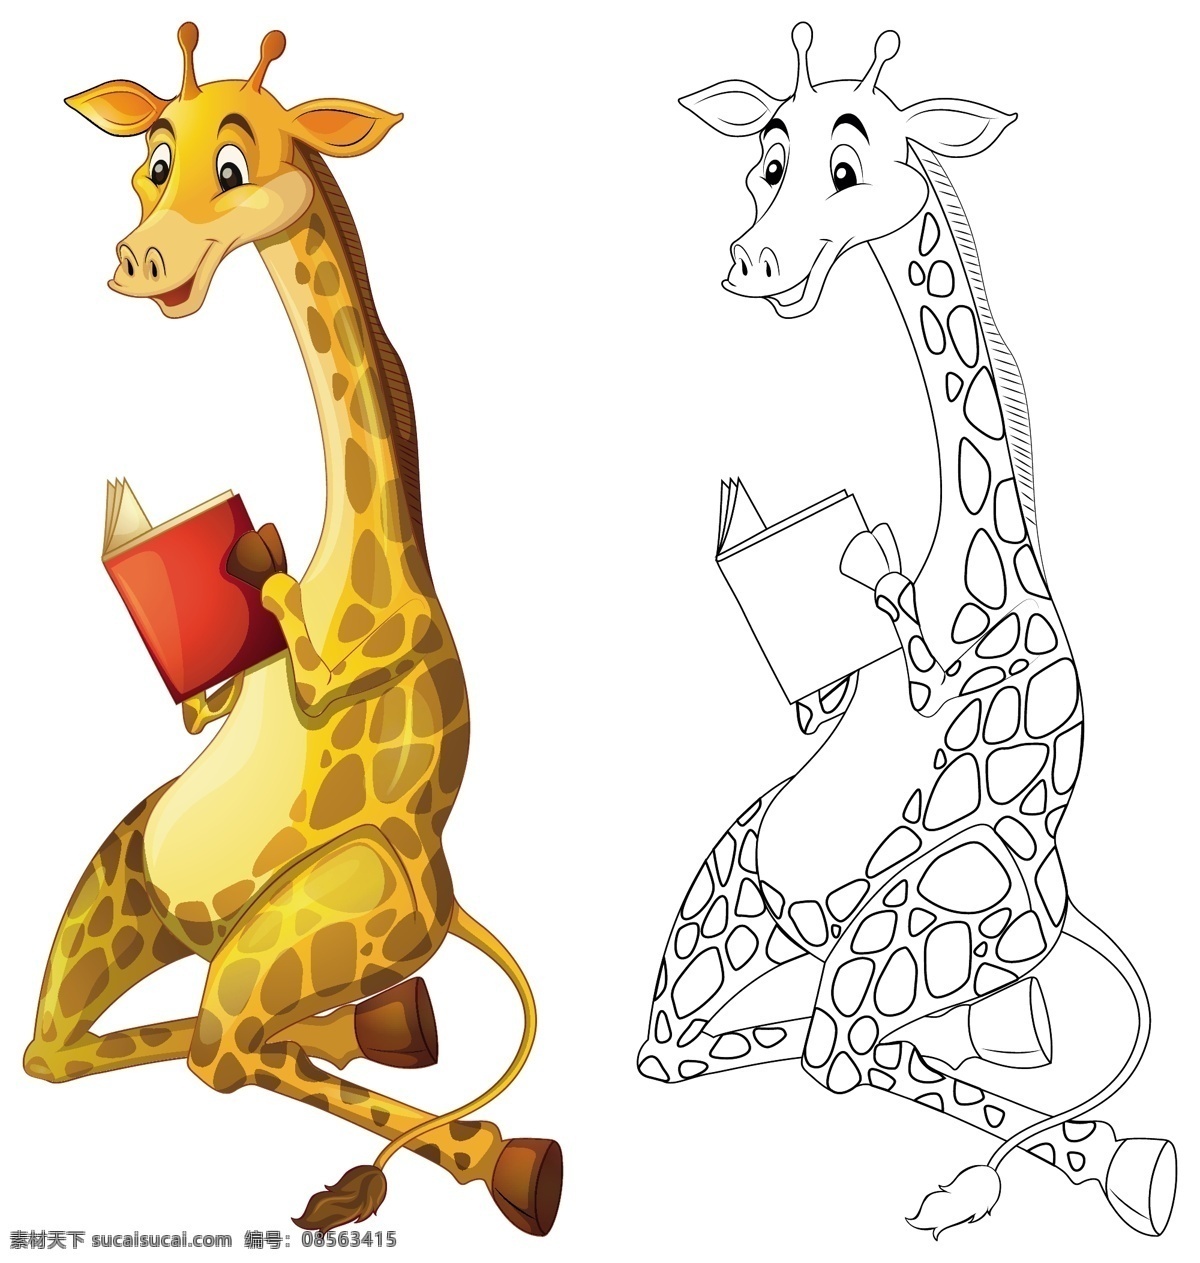 动物填色卡 简笔画 幼儿园图画本 涂色本 绘本 填色本 矢量图库 卡通动物 动物素材 卡通设计